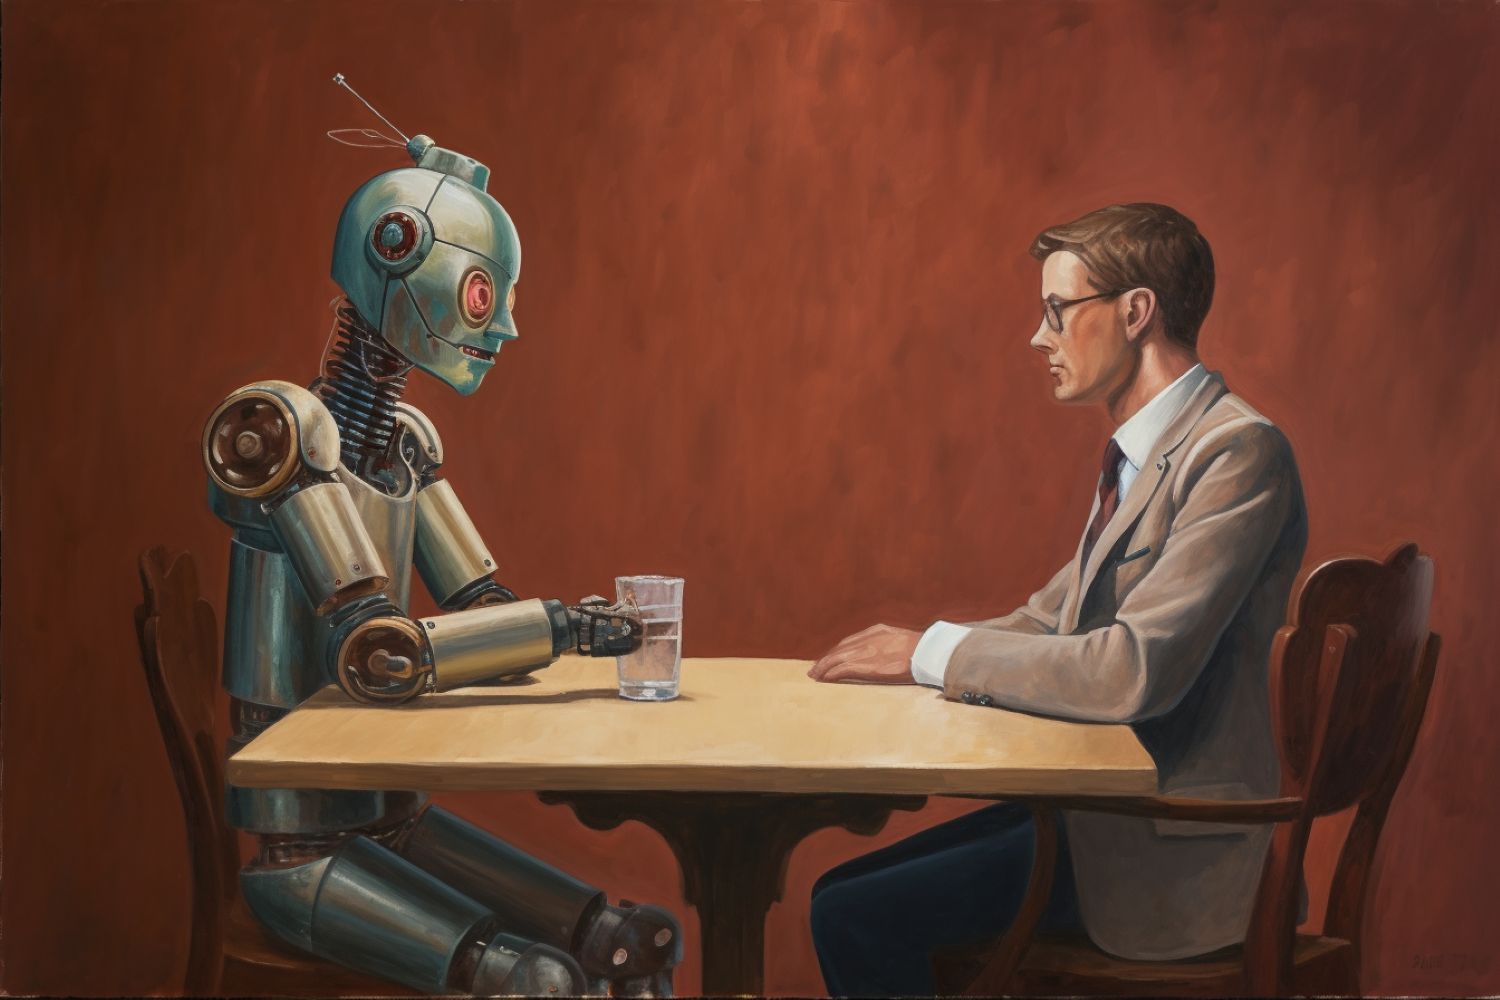 human and robot